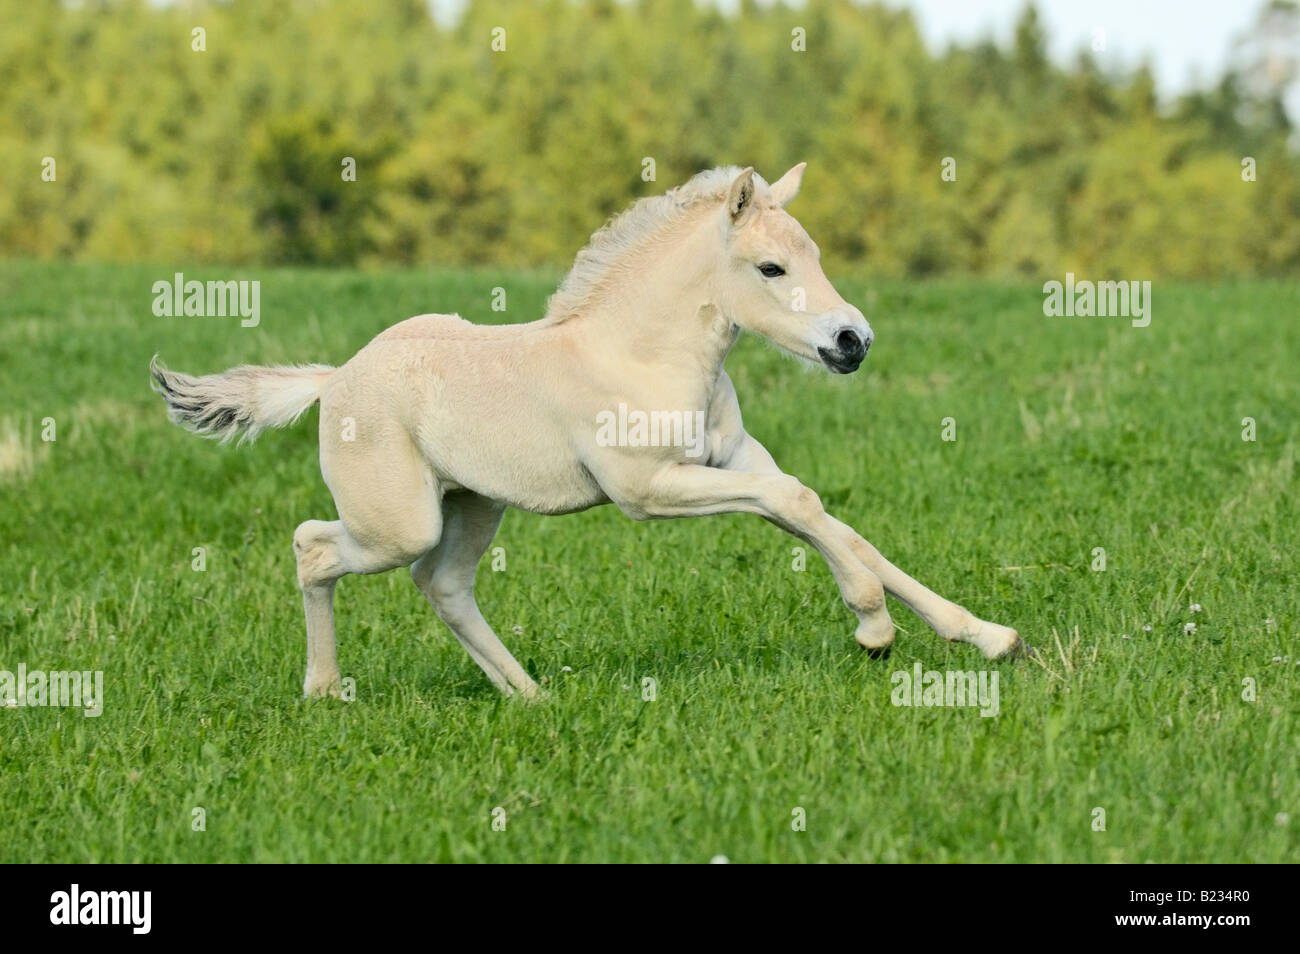 'Norwegian horse' foal Stock Photo